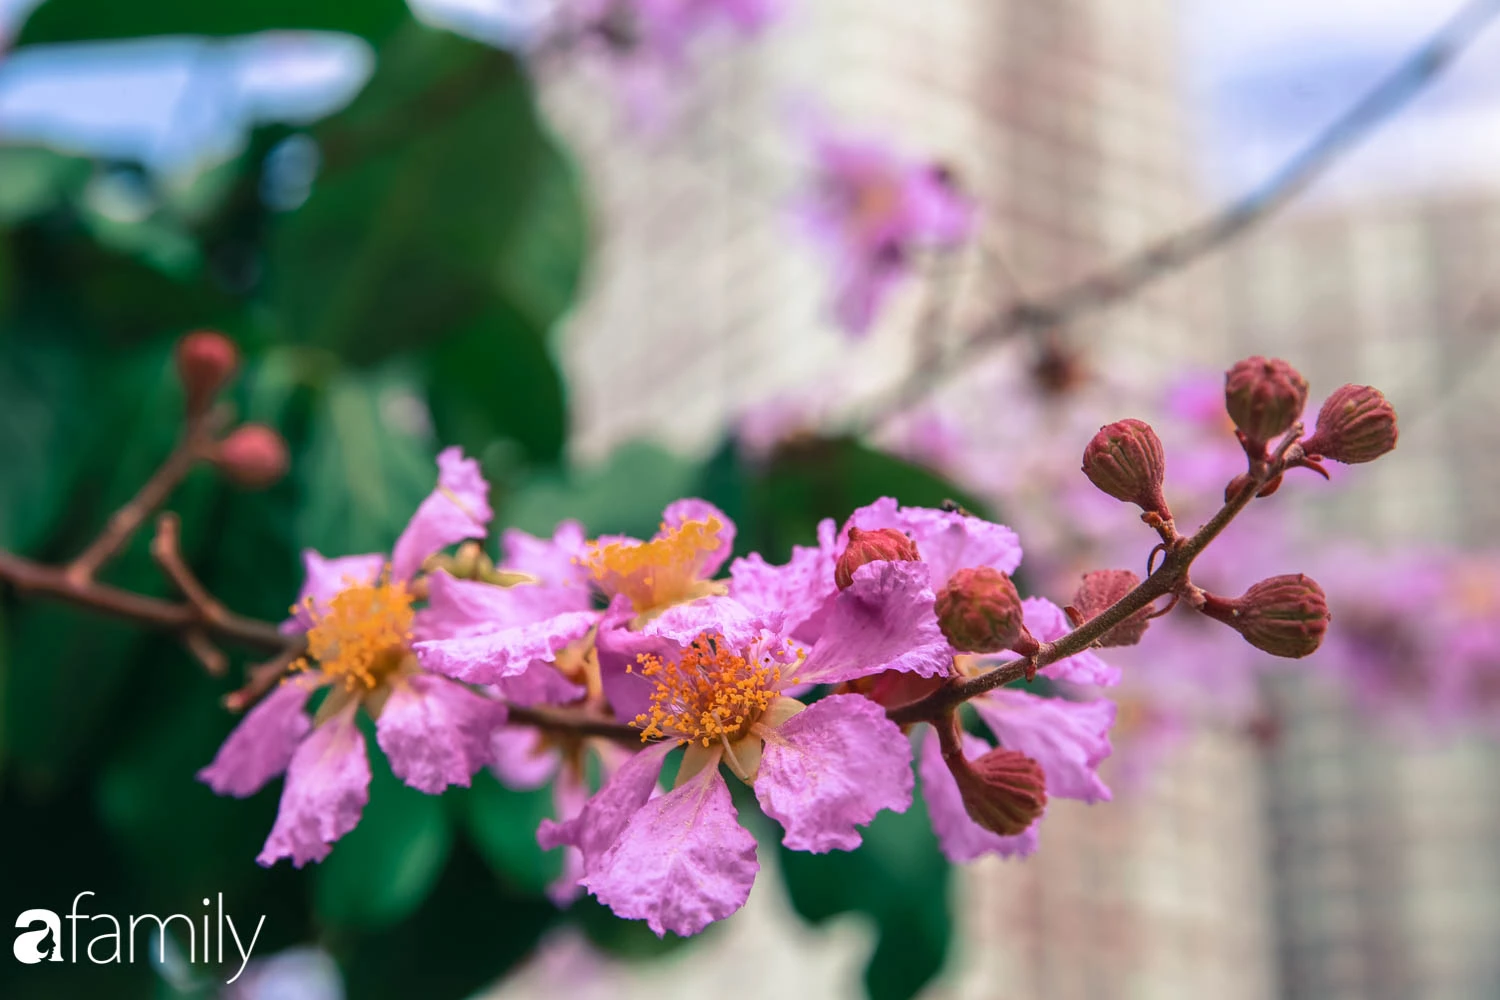 Trở lại cuộc sống bộn bề như trước, có mấy ai nhận ra Hà Nội đang trong một mùa hoa bằng lăng đẹp tuyệt vời - Ảnh 10.